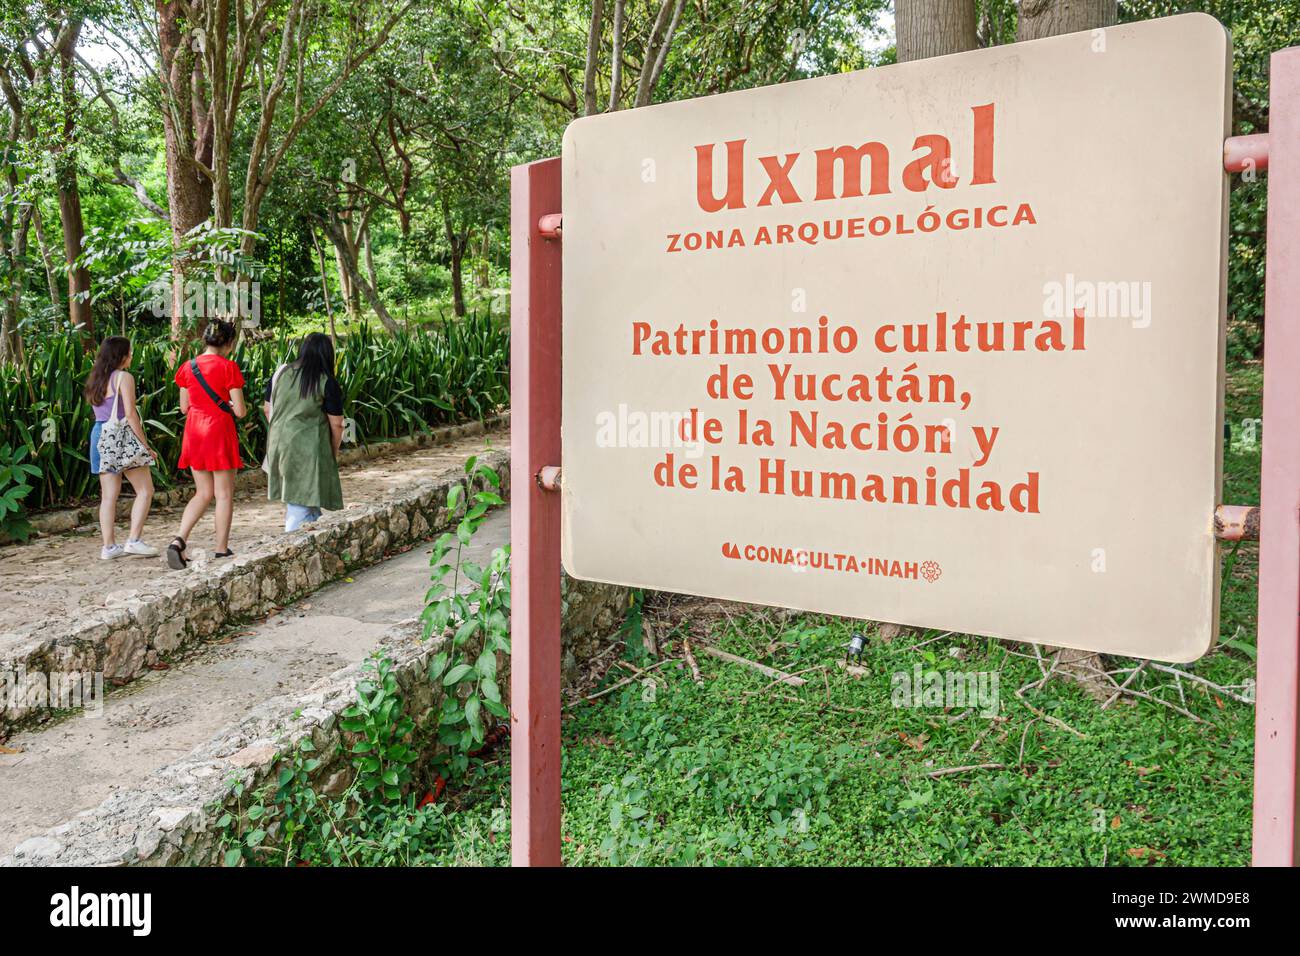 Merida Mexico, Puuc style Uxmal Archaeological zone site, Zona Arqueologica de Uxmal, ville maya classique, panneau d'entrée, visiteurs arrivant femme femme femme femme dame Banque D'Images